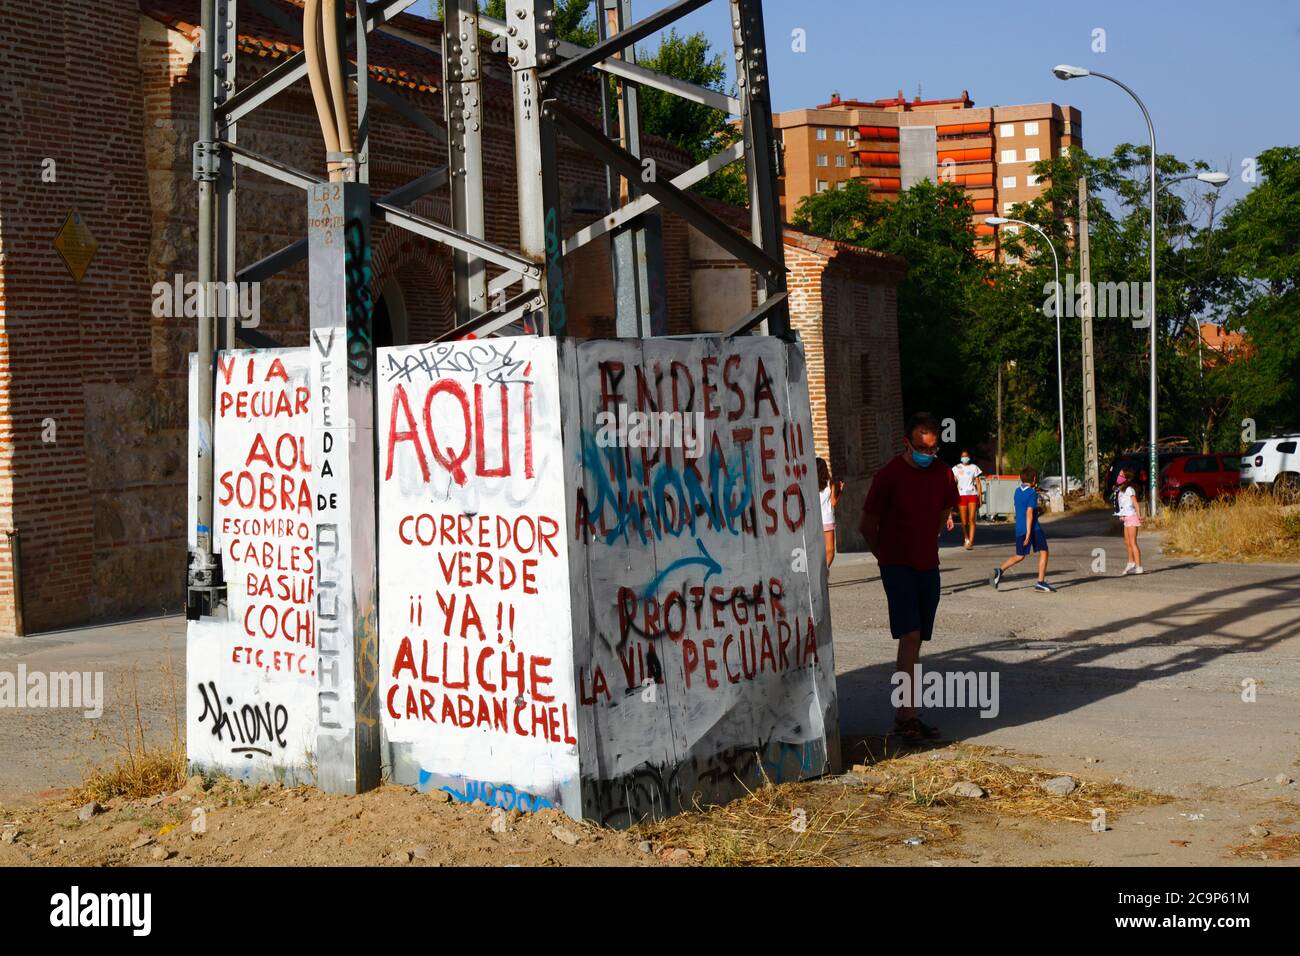 Graffiti sulla base di piloni elettrici che chiedono un corridoio verde tra i distretti di Caranbanchel e Aluche, Carabanchel, Madrid, Spagna Foto Stock